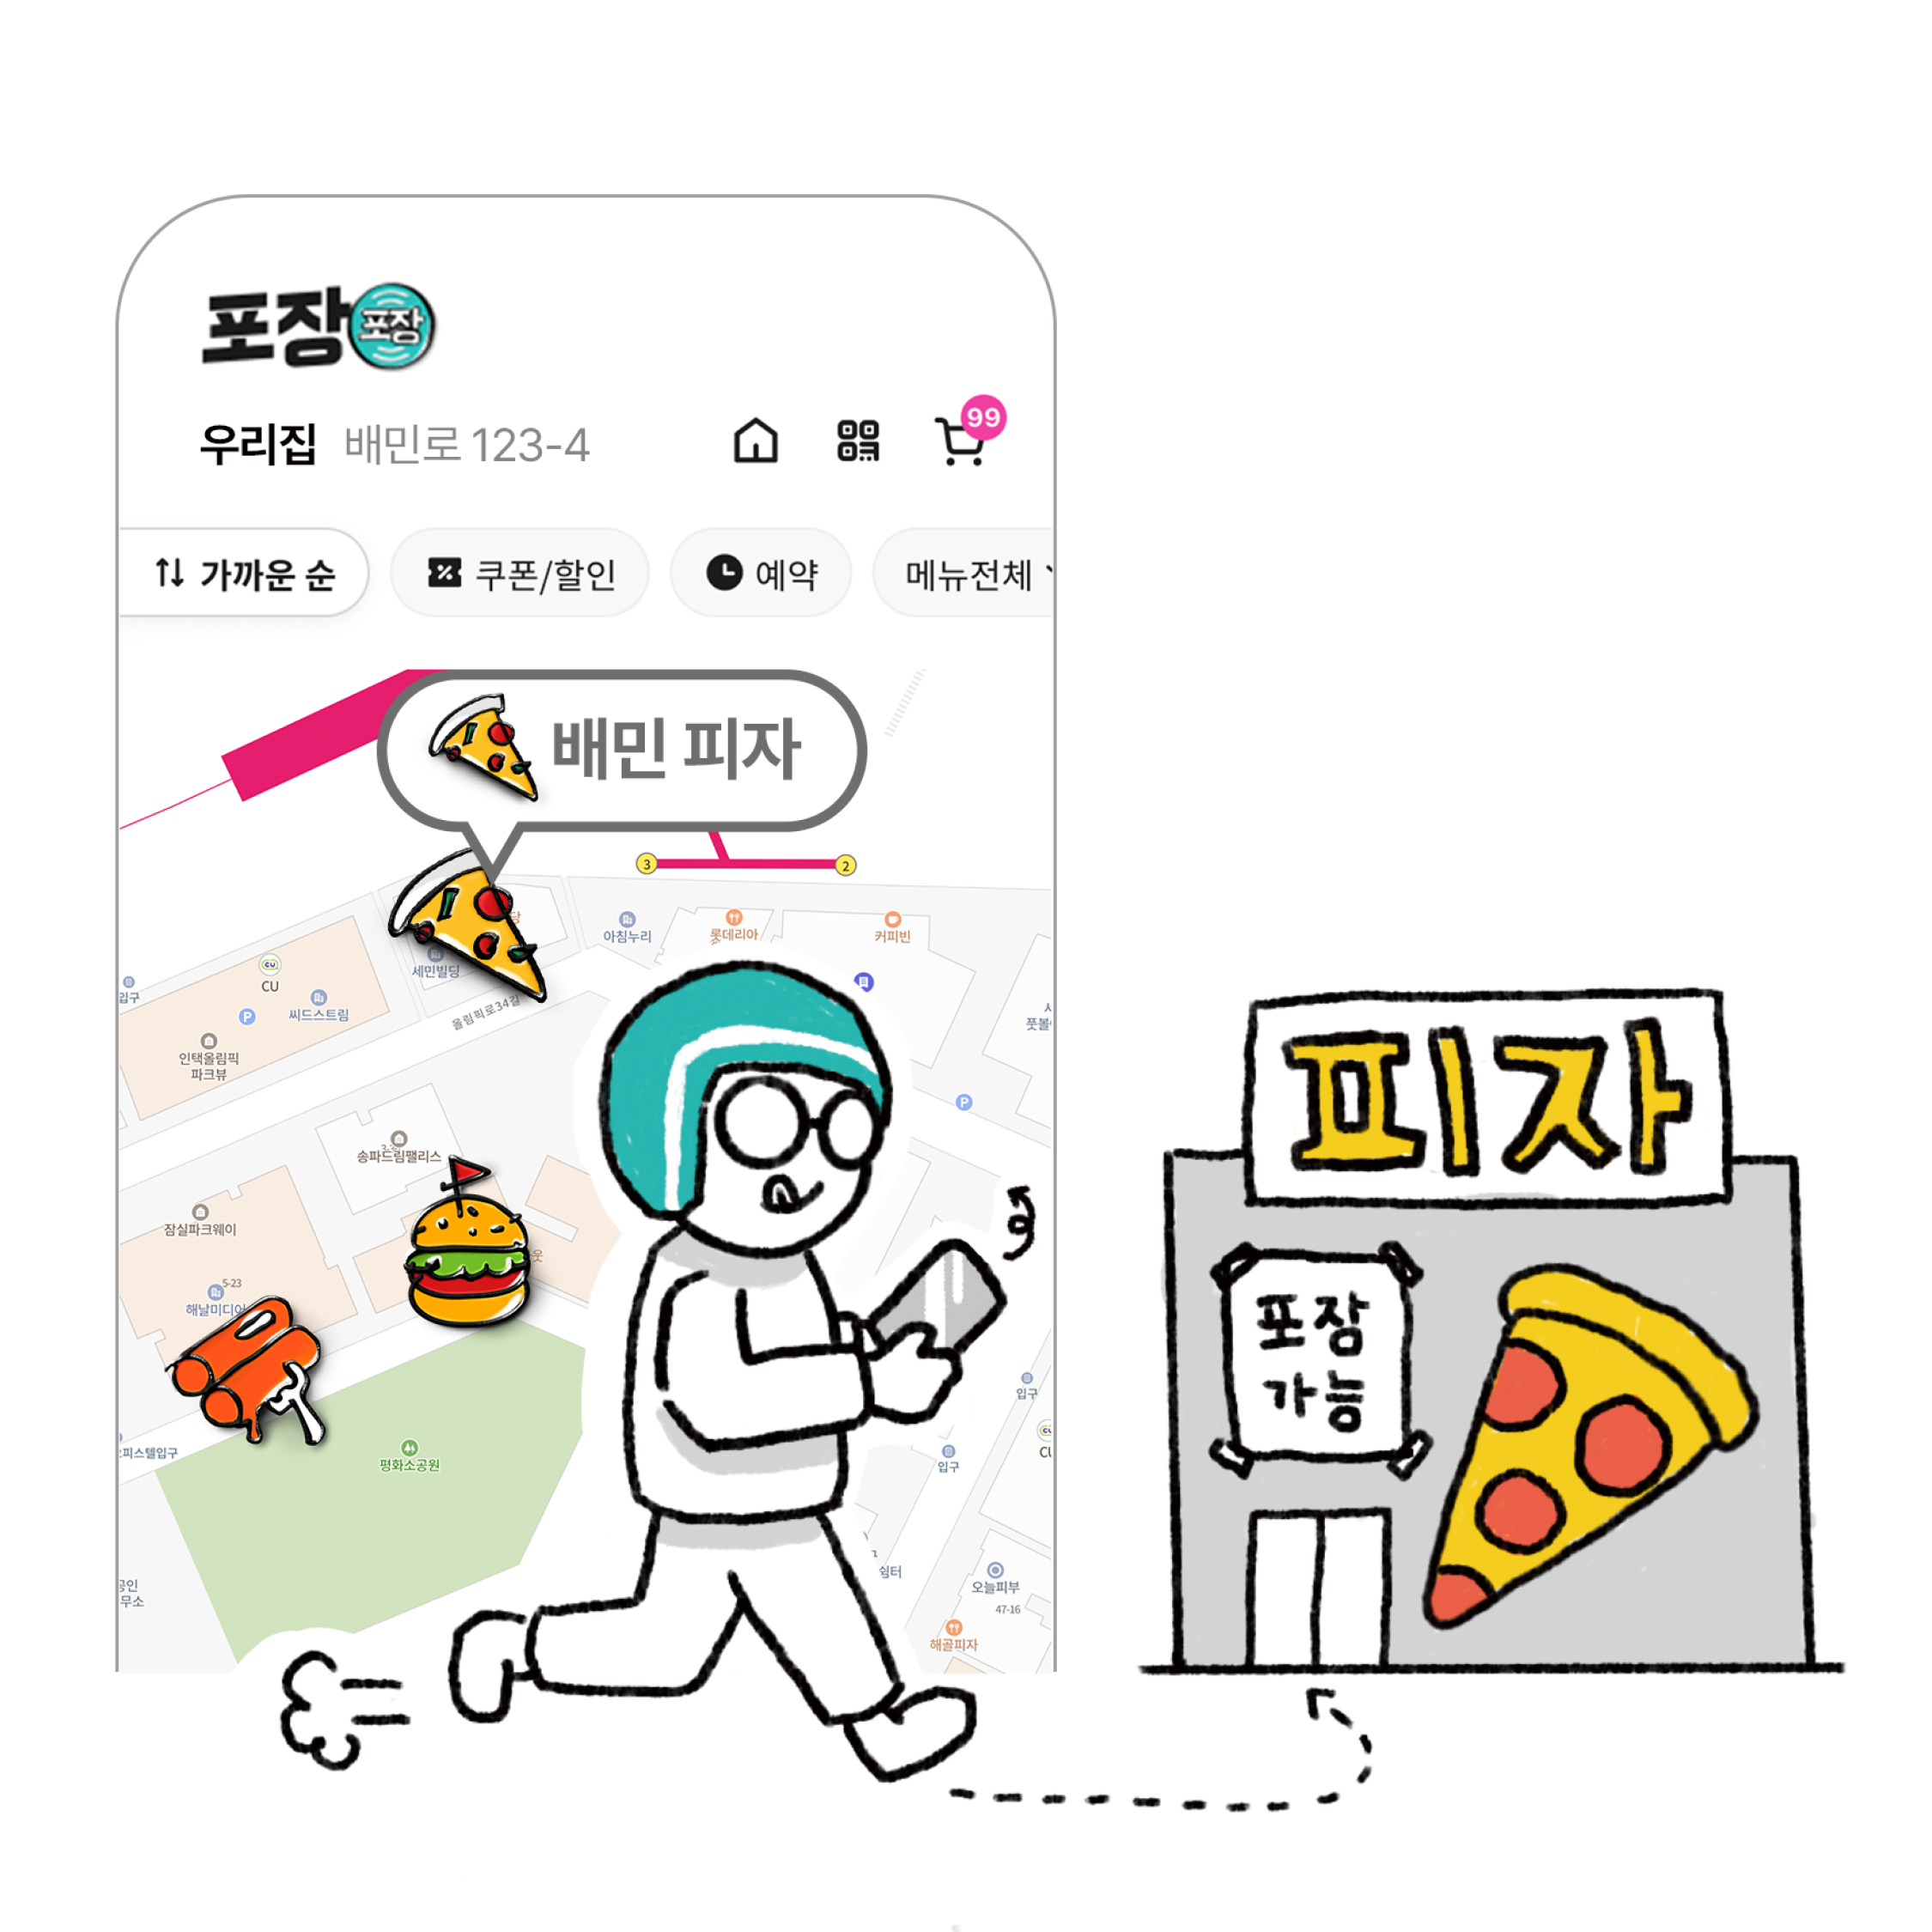 스마트폰 화면 속에 지도가 있다. 지도 위에는 음식 모양의 아이콘이 있고, 배달이가 포장이 가능하다는 표시가 된 피자가게를 향해 걸어가고 있다.